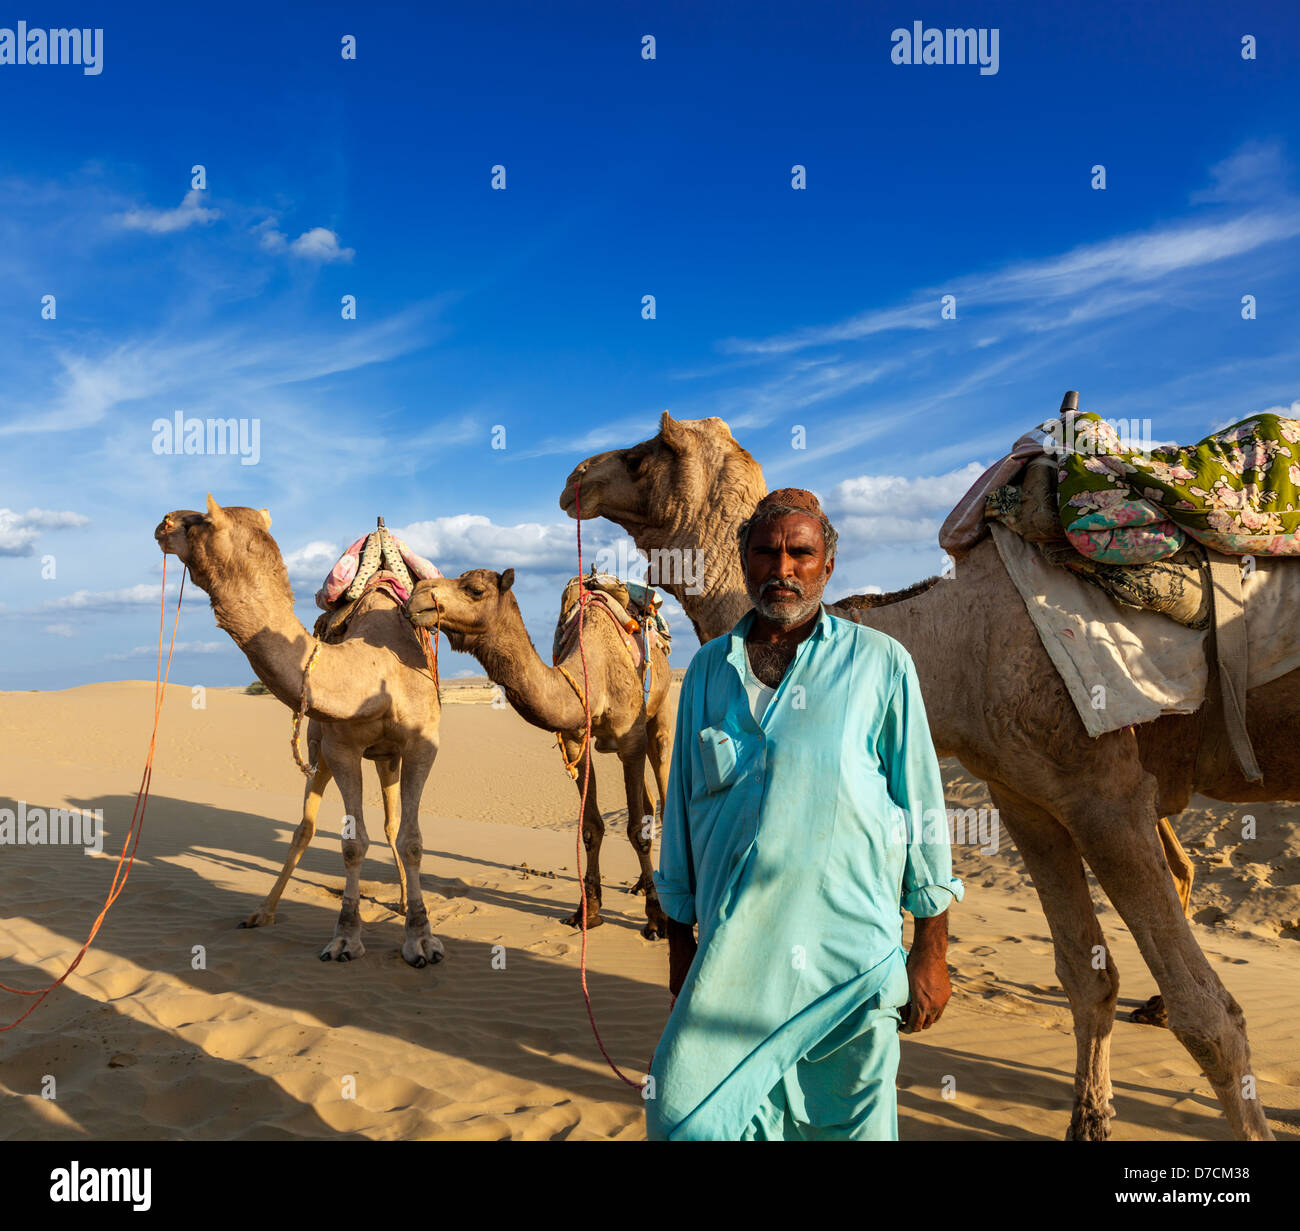 Antecedentes de viajes Rajasthan - hombre indio cameleer (conductor de camello) retrato con camellos en las dunas del desierto de Thar. Jaisalmer, Rajast Foto de stock